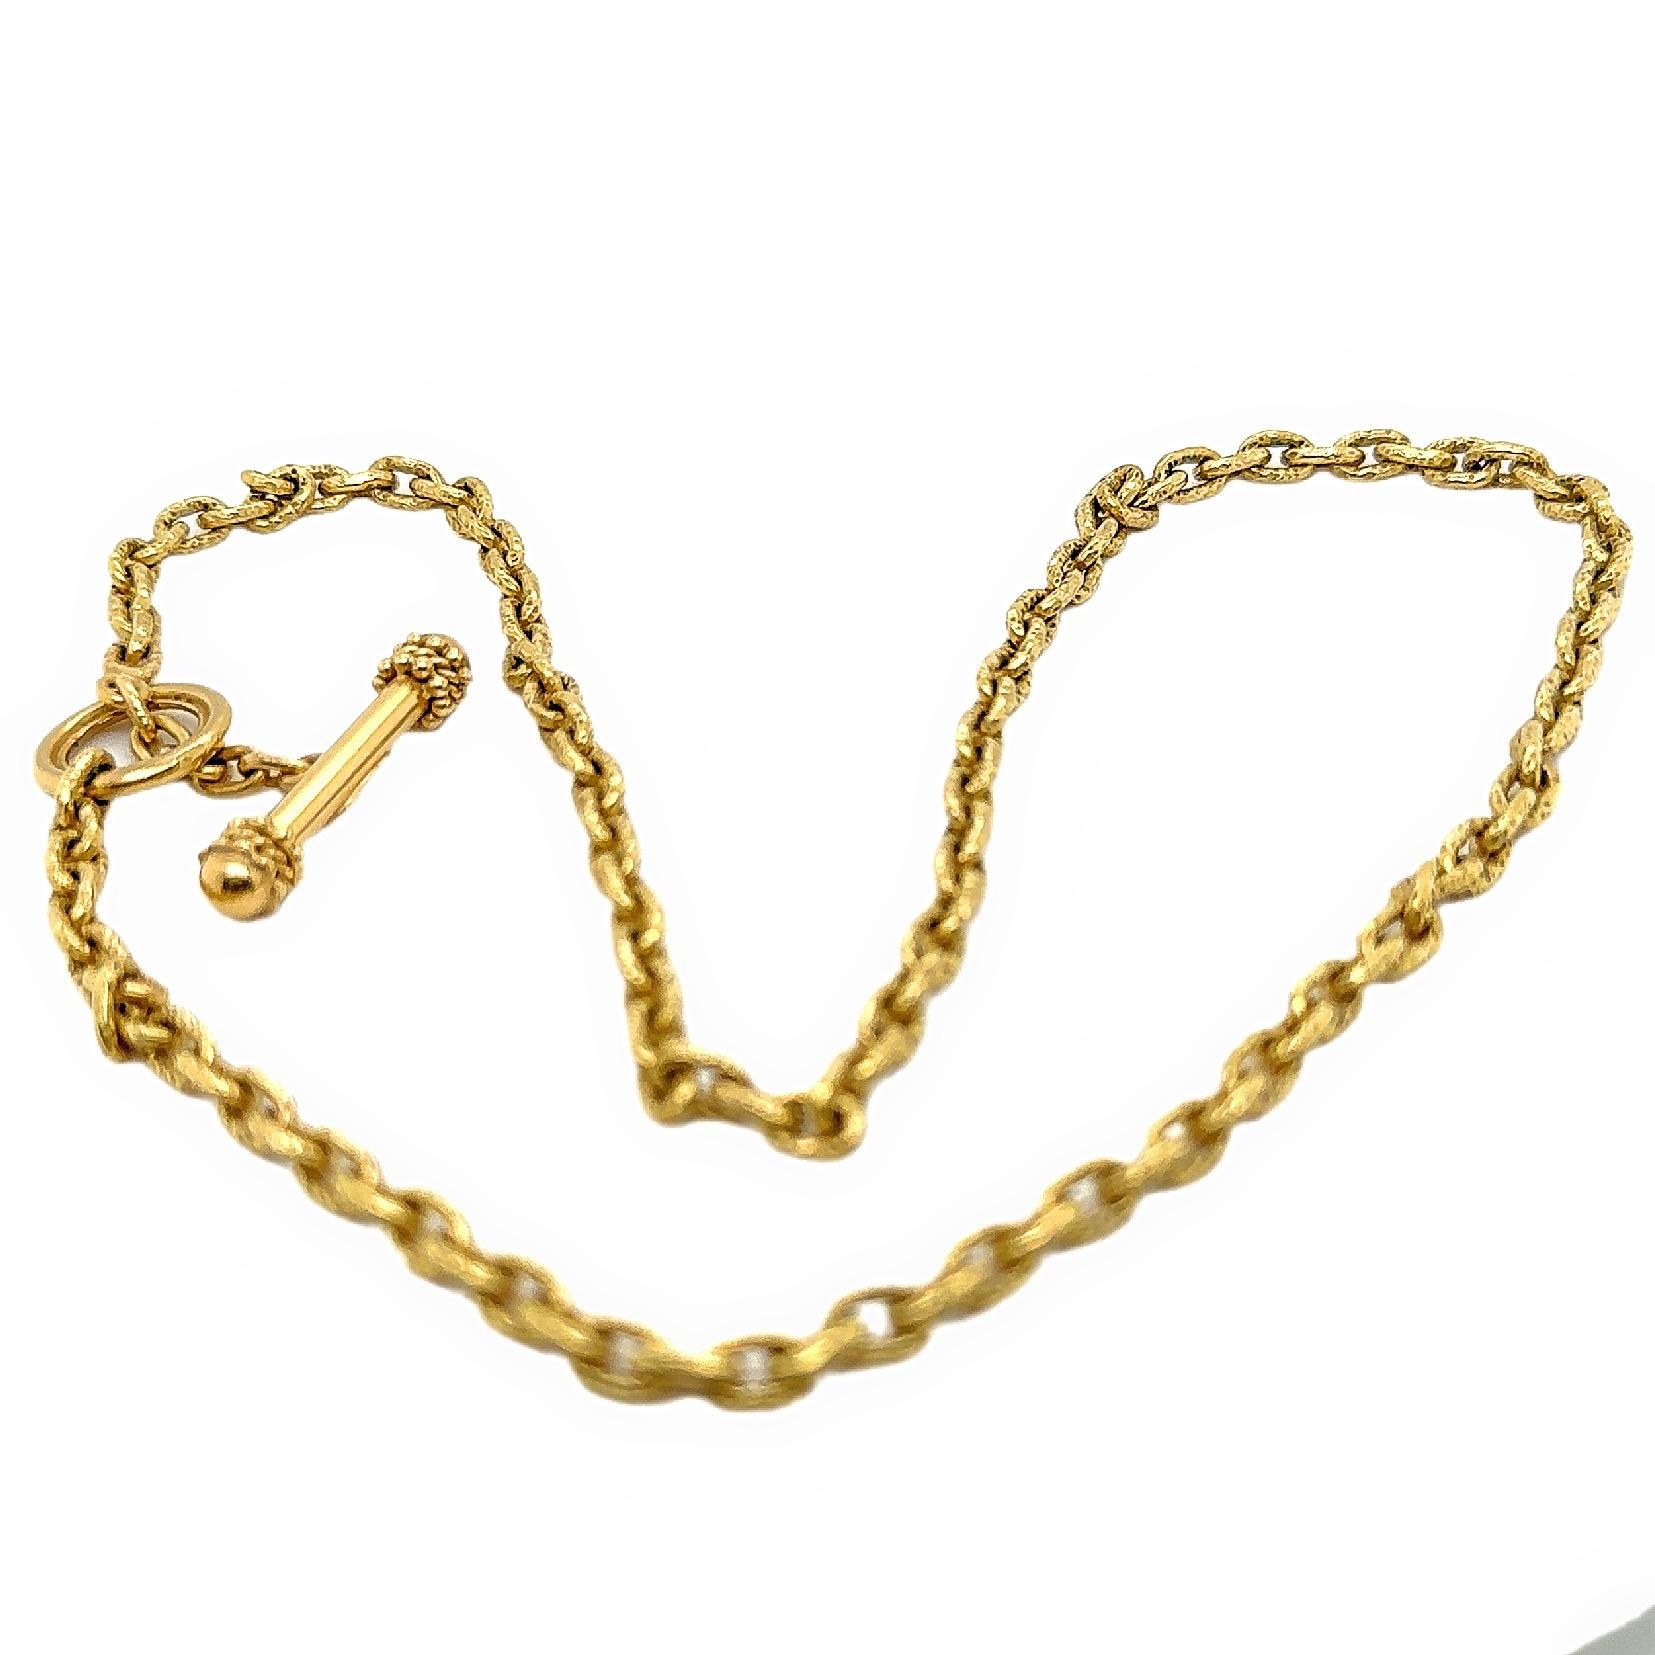 Elizabeth Locke Orvieta Hammered Gold Oval Link Necklace 19k Yg 2